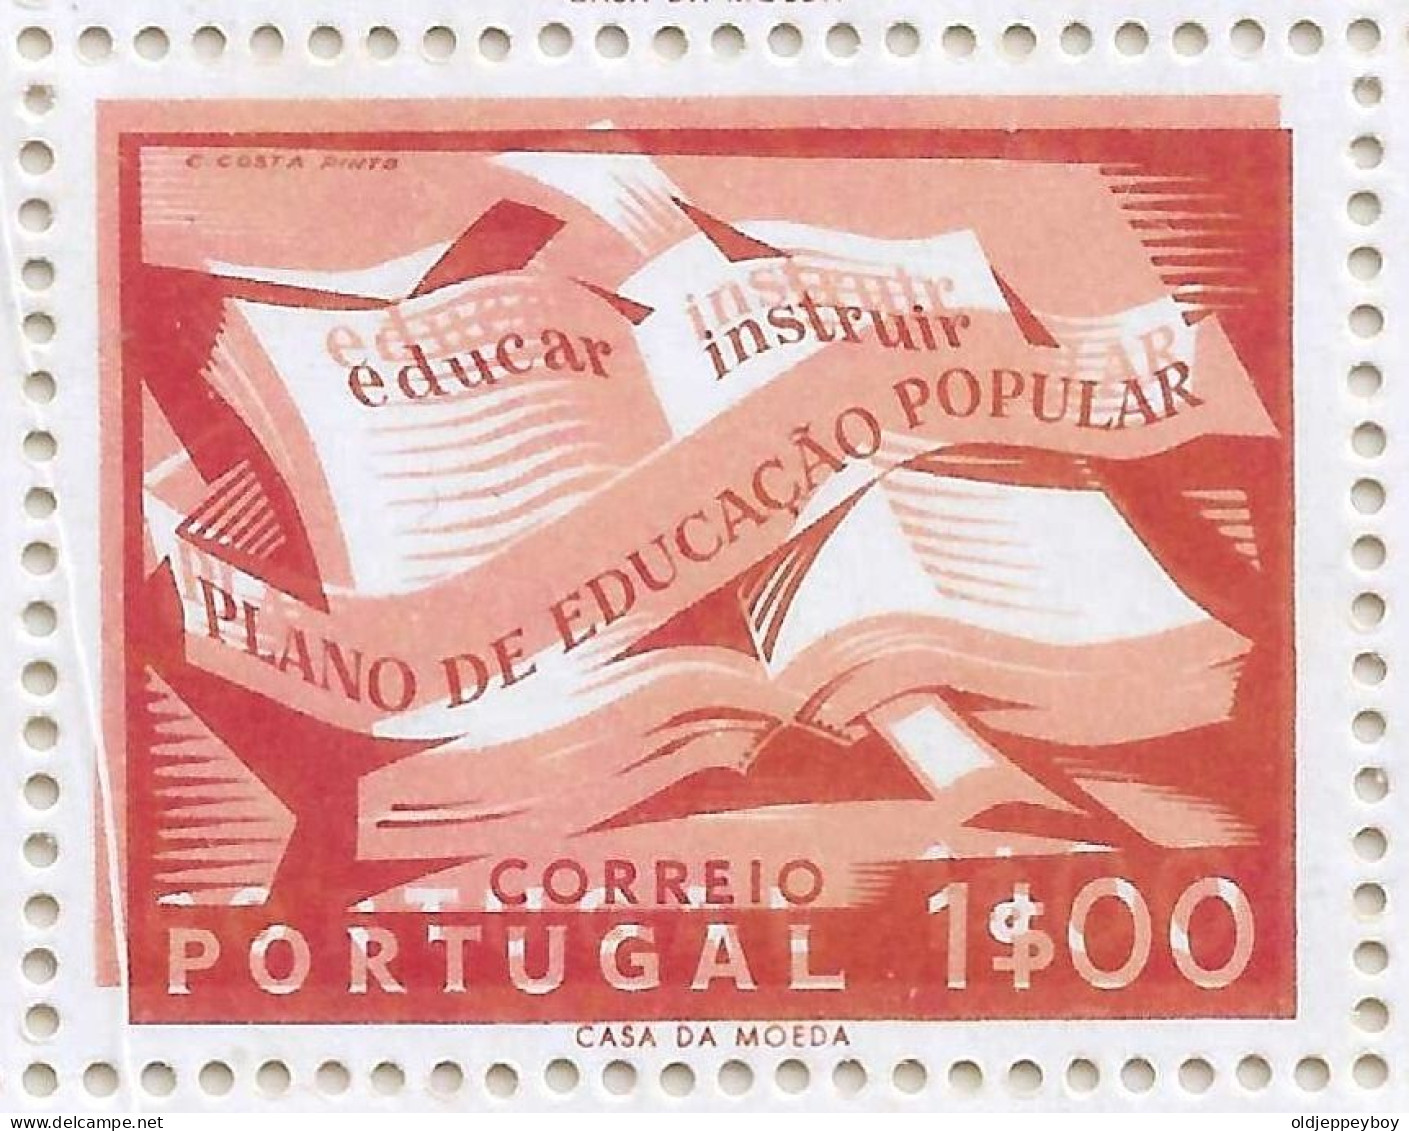 ERROR VARIETY PORTUGAL 1954 CAMPANHA EDUCAÇÃO 1$00 BLOCK PERF 13 1/2 DOUBLE IMPRESSION DUPLA IMPRESSAO EXTRA RARE MNH** - Unused Stamps